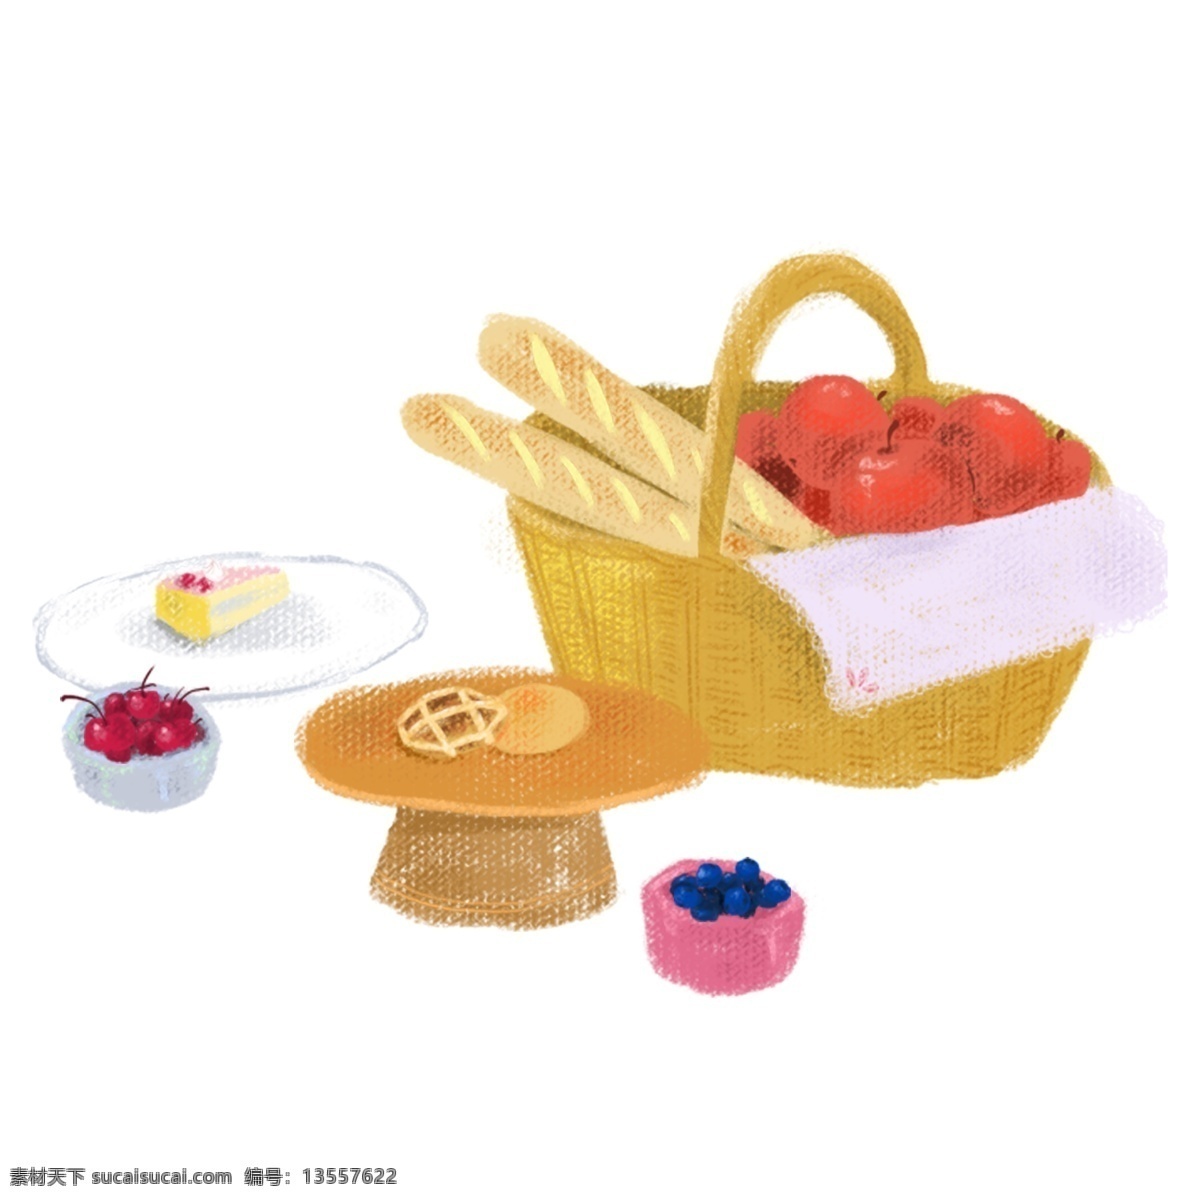 野营 聚餐 食物 小 场景 野餐 篮子 手提篮 托盘 松饼 蓝莓 樱桃 蛋糕 盘子 面包 苹果 餐布 黄色 秋季